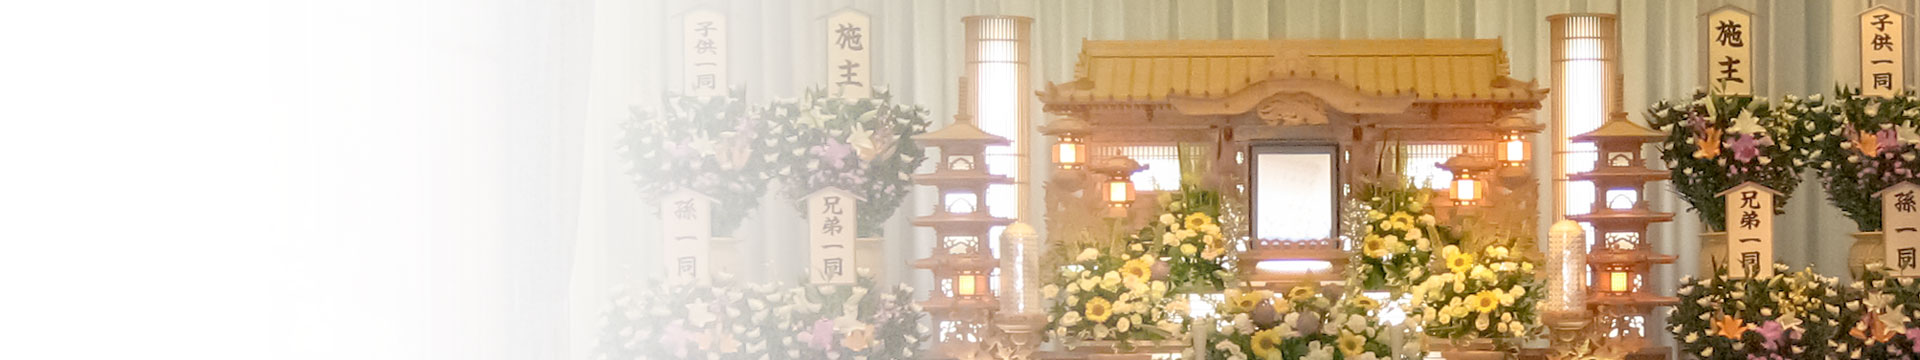 小ホールの祭壇を背景にした家族葬ページのトップバナー